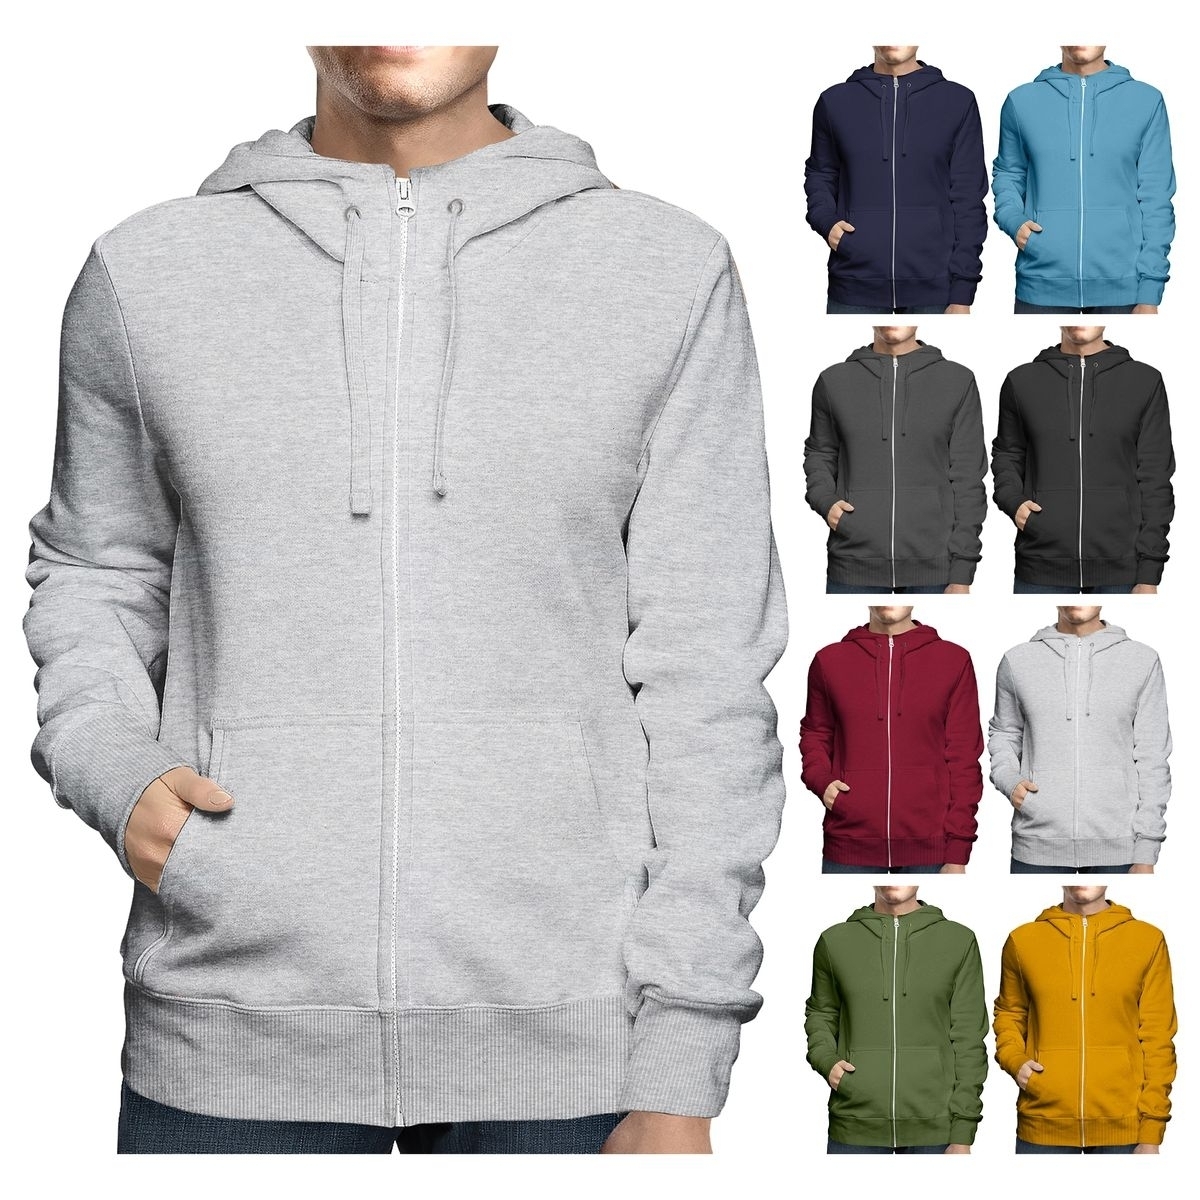 Men's Big & Tall Winter Warm Soft Cozy Full Zip-Up Fleece Lined Hoodie Sweatshirt - Charcoal, Small